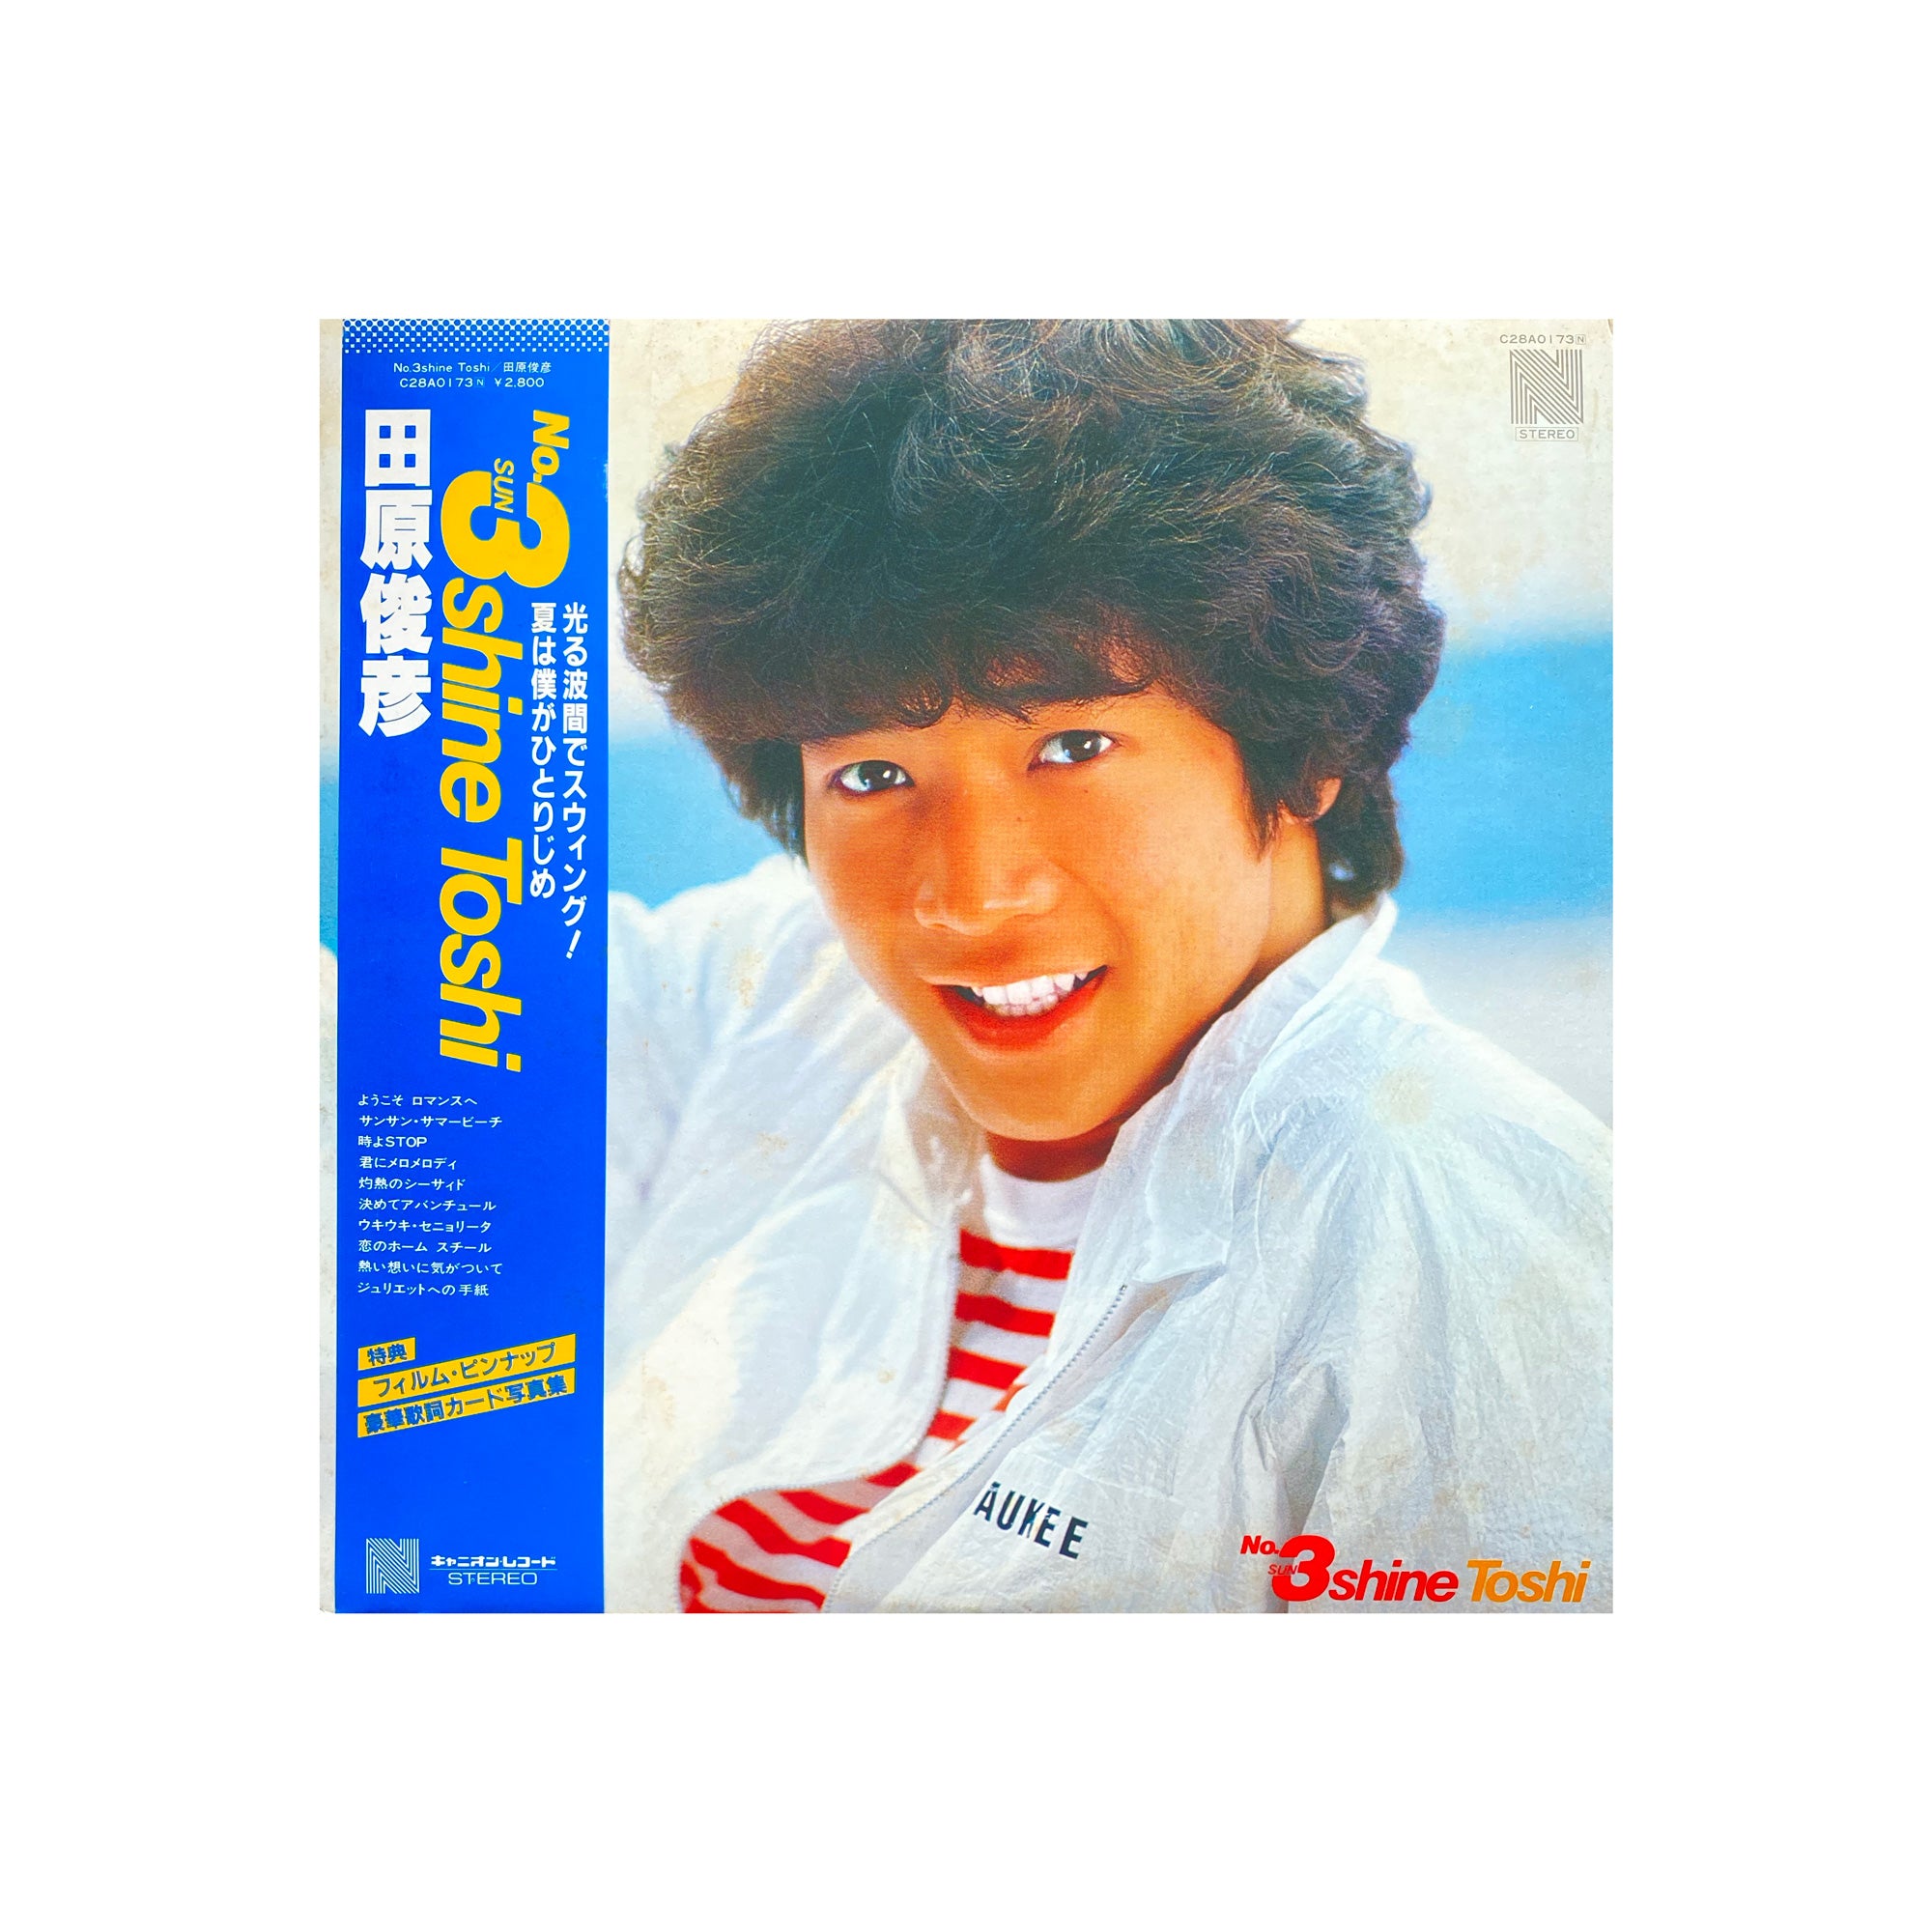 Toshihiko Tahara - Toshi No. 3 Shine